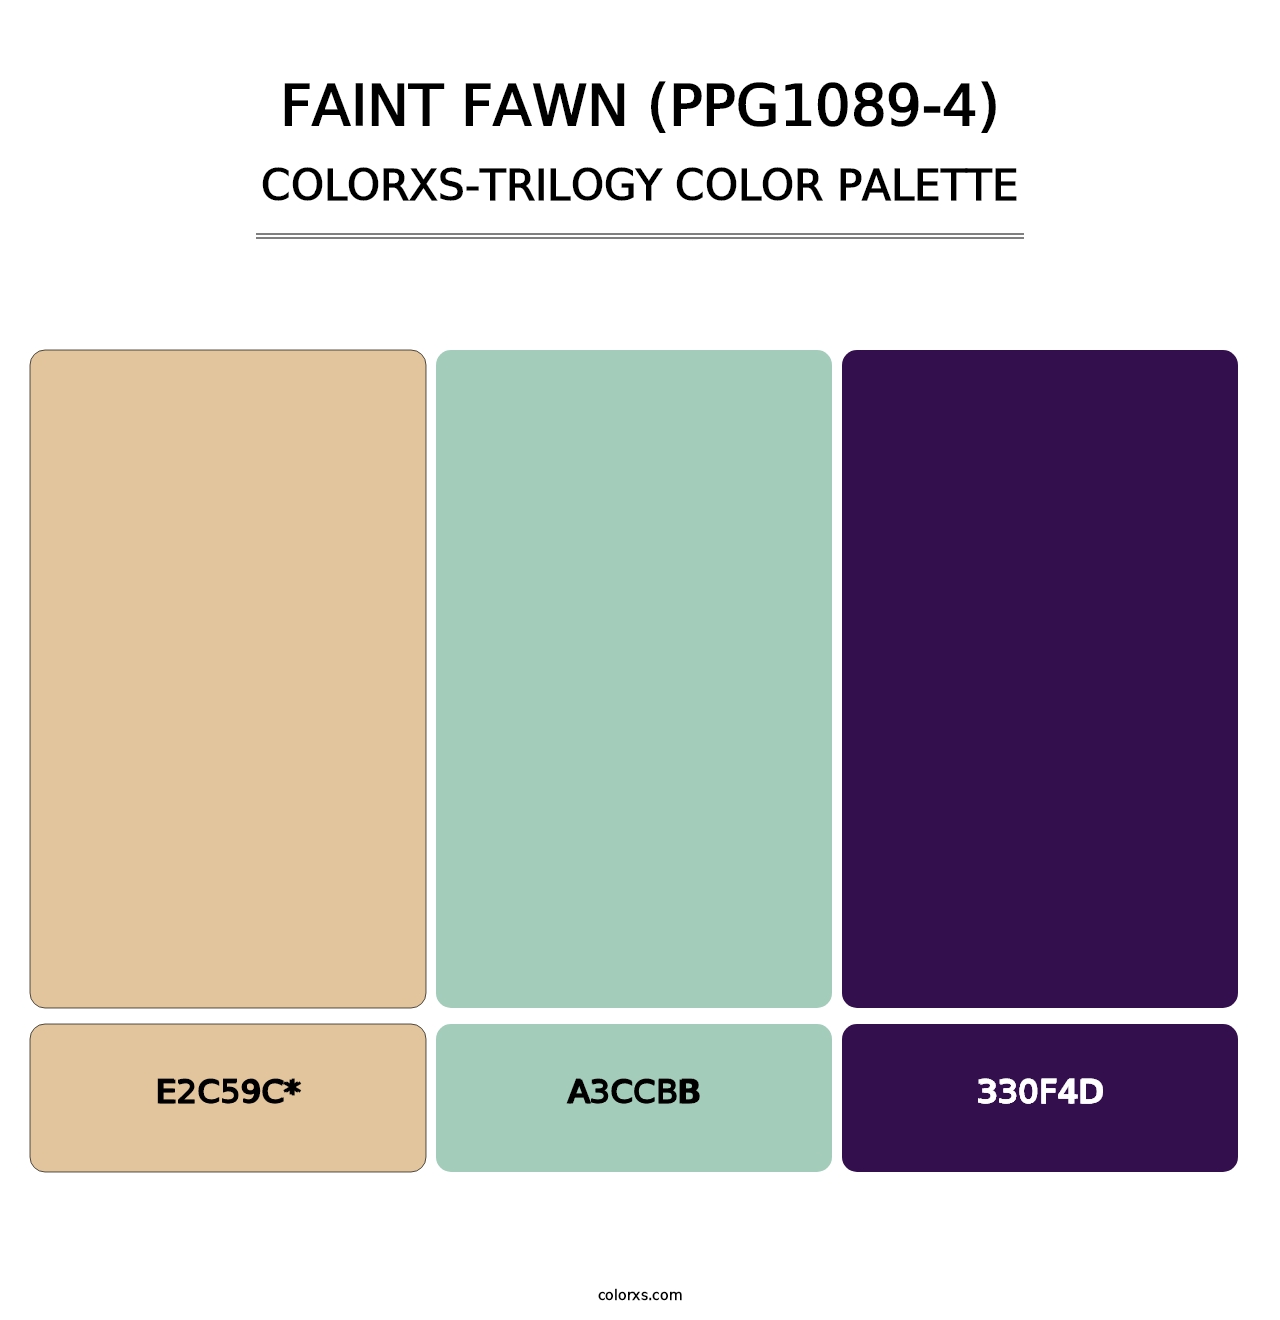 Faint Fawn (PPG1089-4) - Colorxs Trilogy Palette